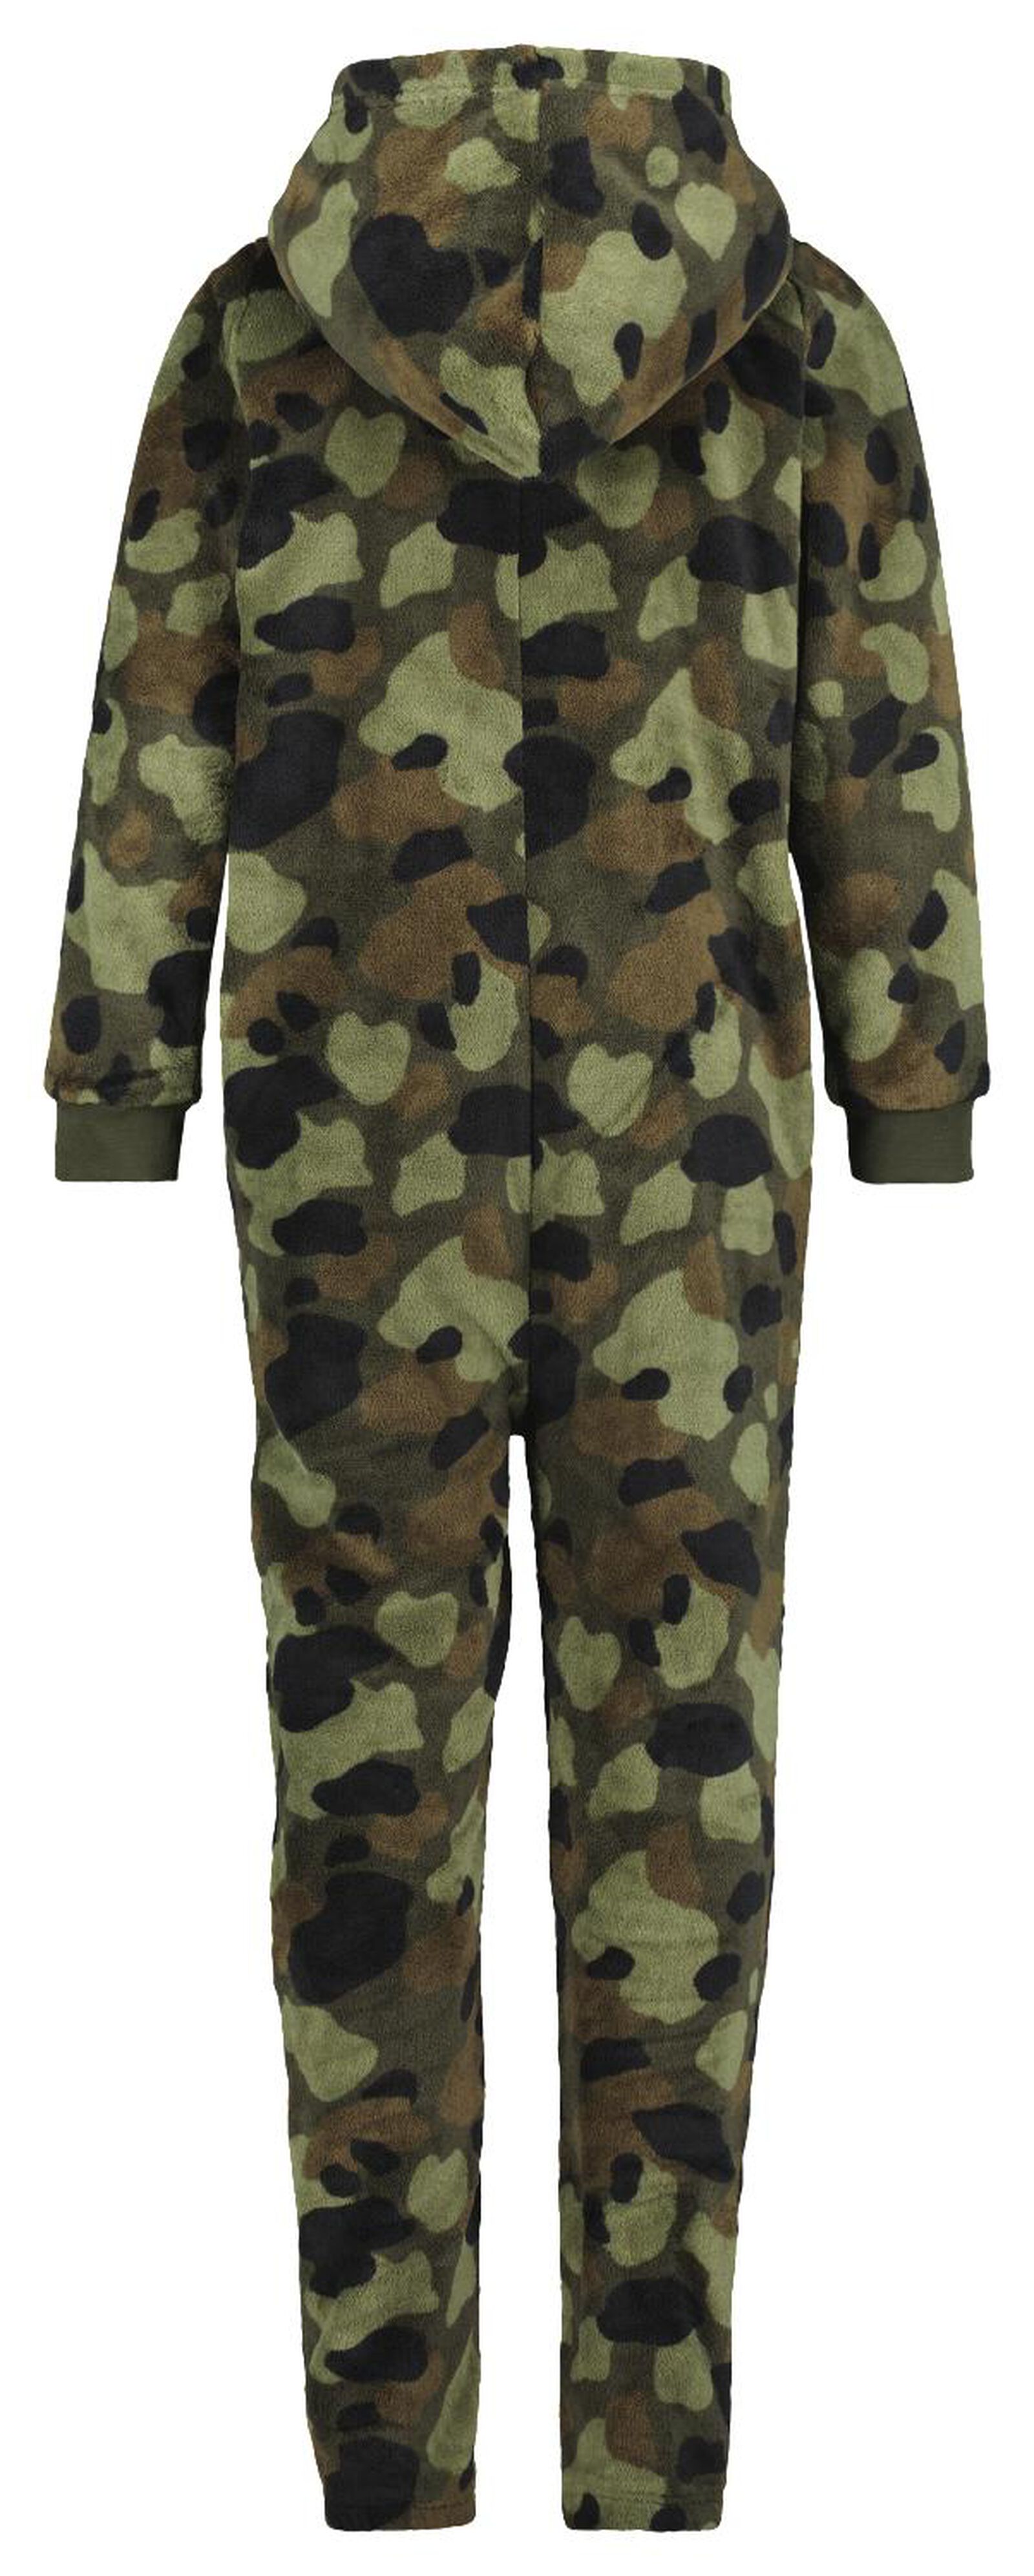 kinder onesie fleece camouflage groen - HEMA